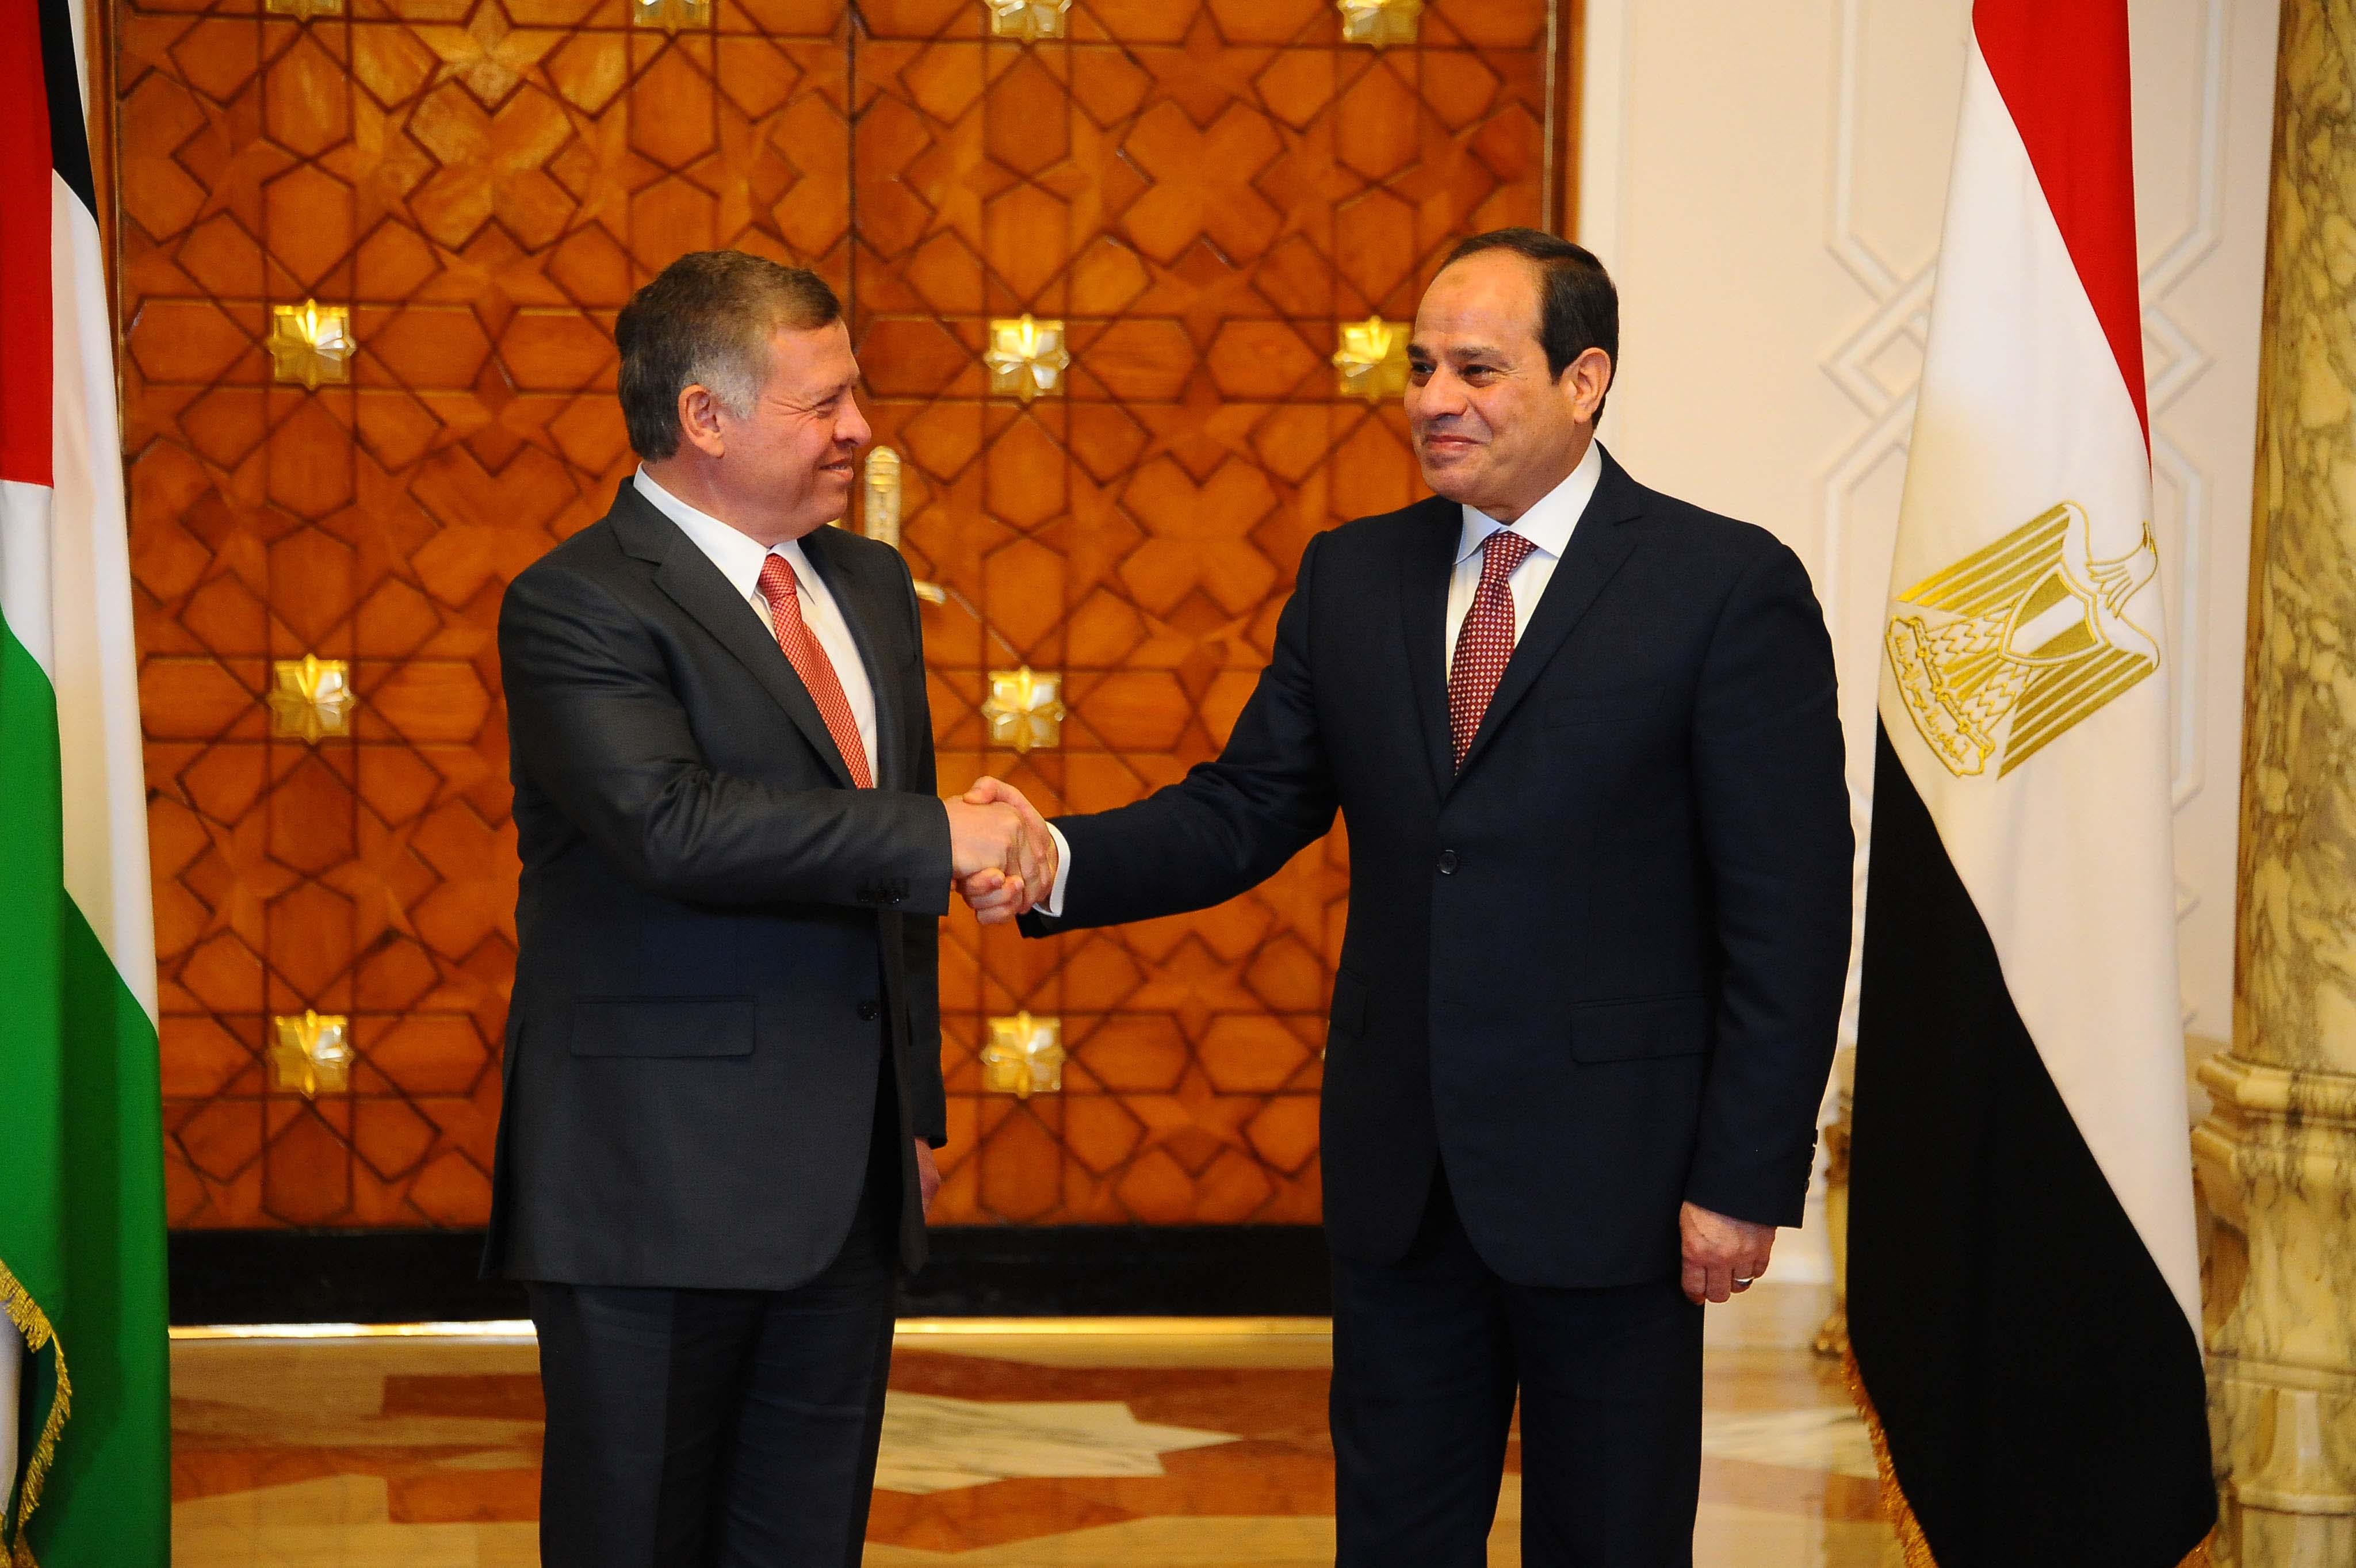 صورة| الرئيس السيسي يصل الأردن والملك عبدالله في استقباله | العاصمة نيوز